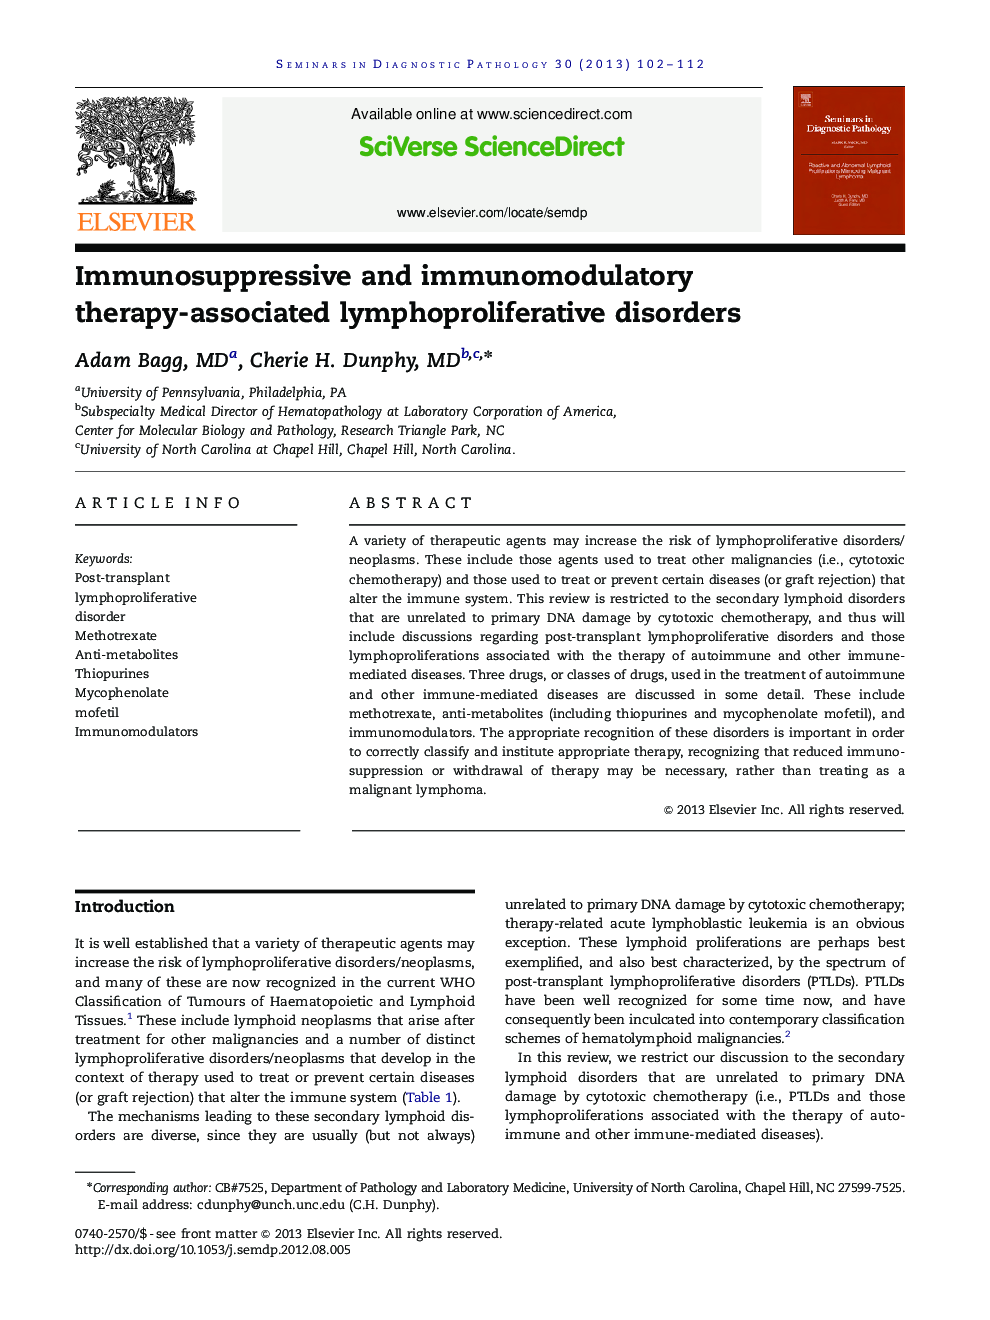 Immunosuppressive and immunomodulatory therapy-associated lymphoproliferative disorders